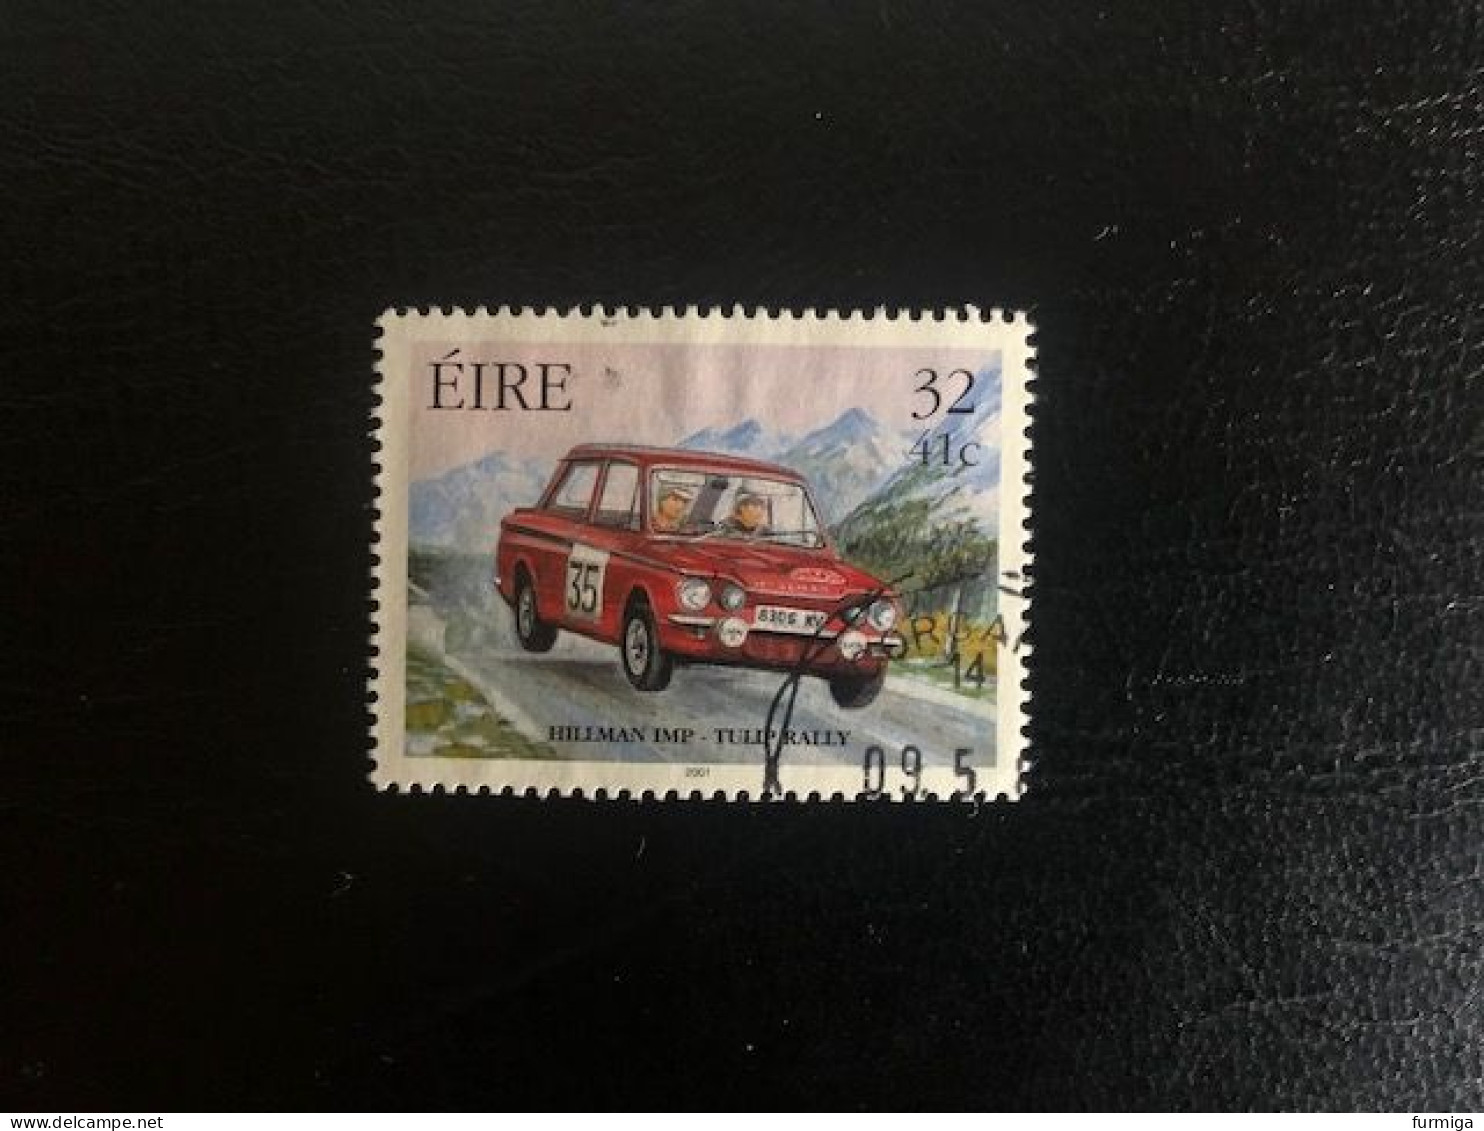 Irland EIRE 2001 - 1324 - Fein RUND Gestempelt - Fine Used LUX Postmark - Gebraucht